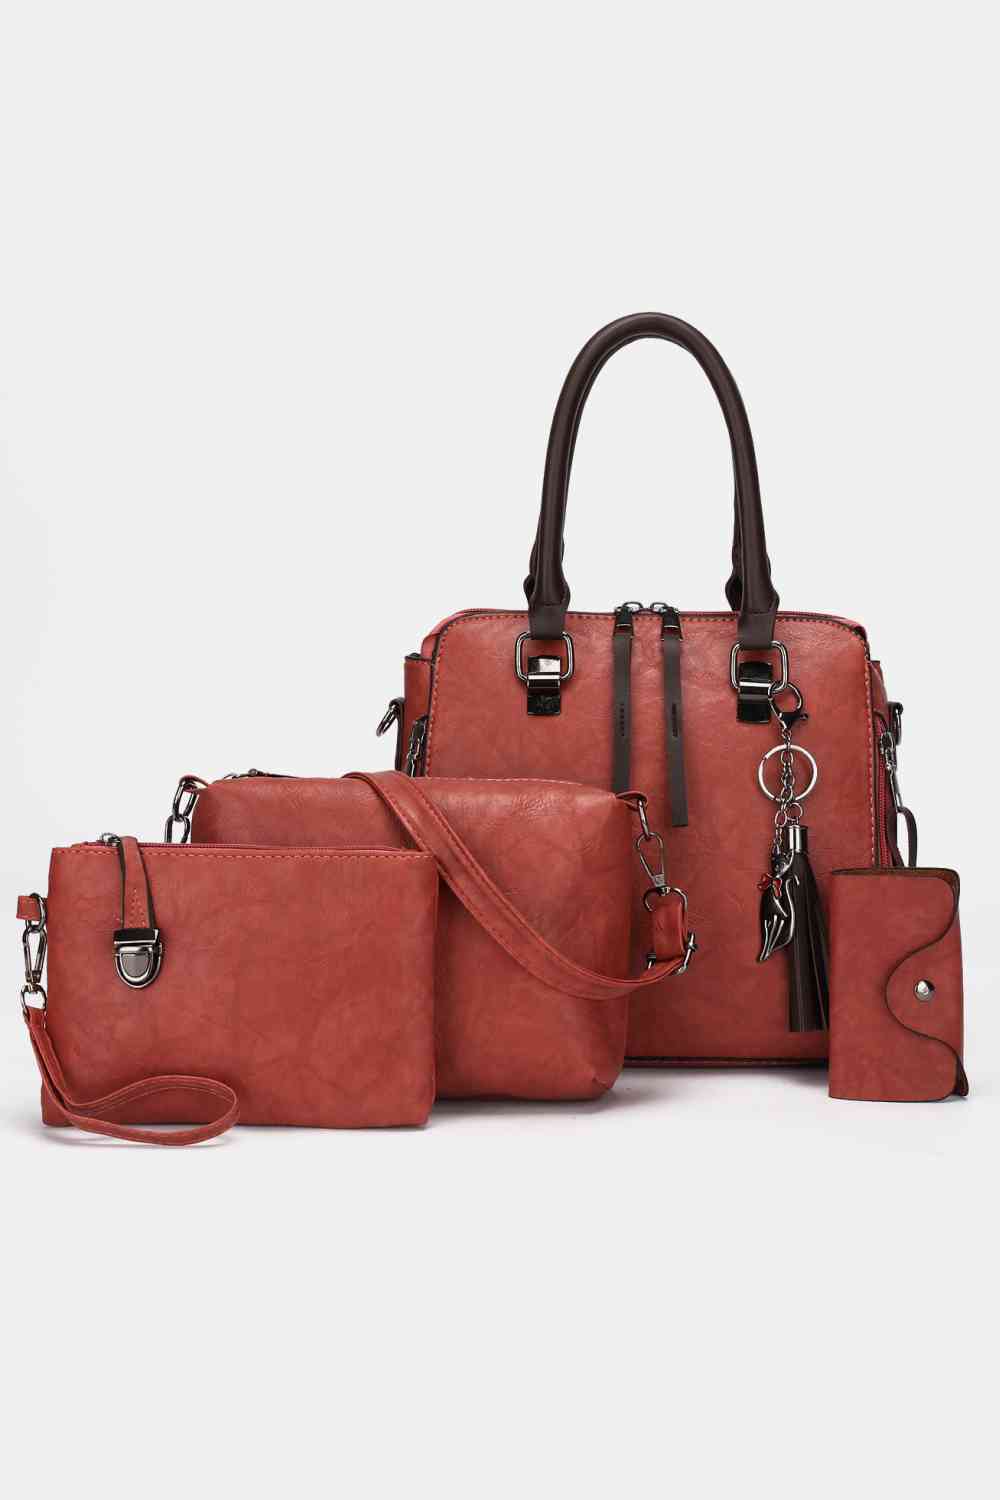 PU Leather Bag Set - 4-Piece